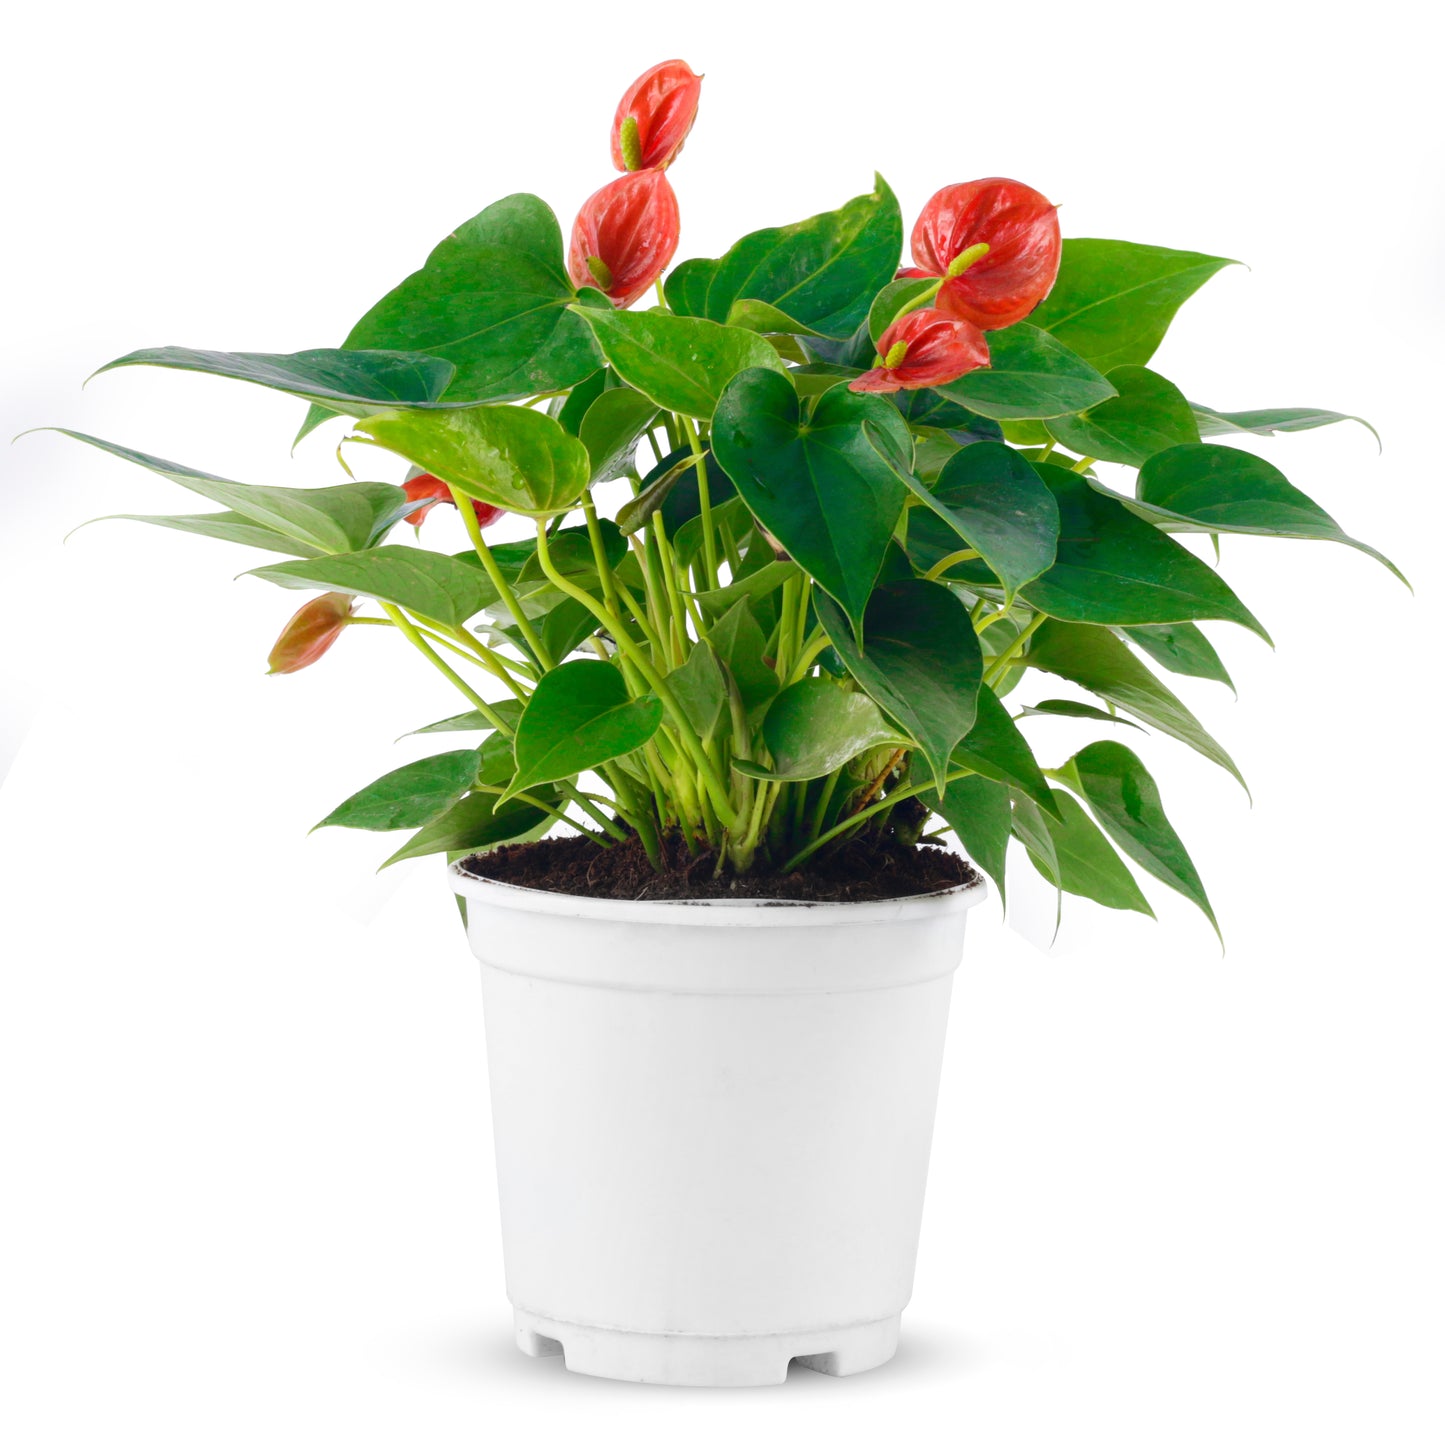 Anthurium live plant with white plastic pot